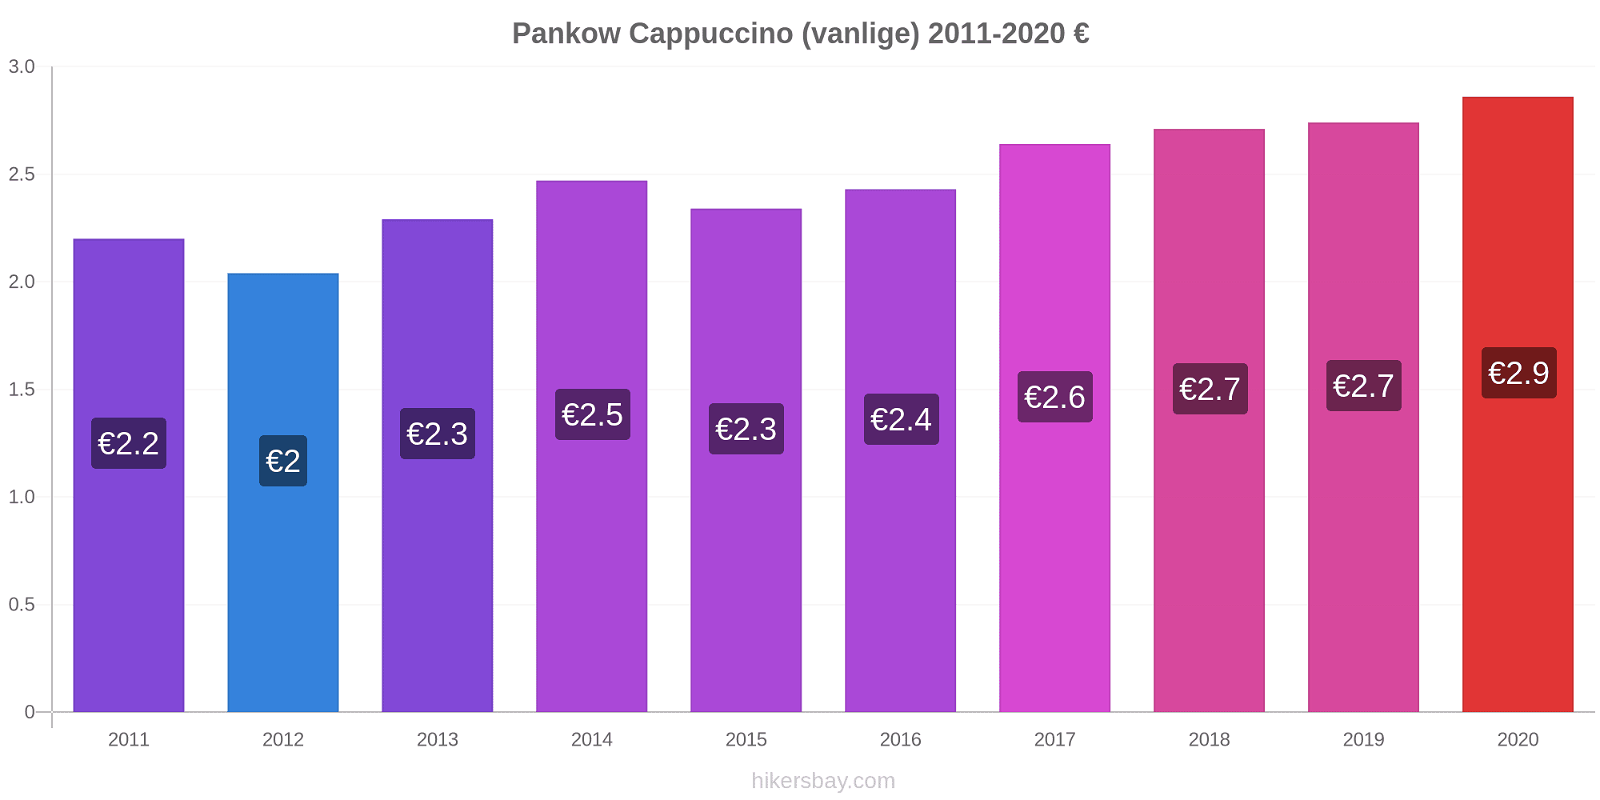 Pankow prisendringer Cappuccino (vanlige) hikersbay.com